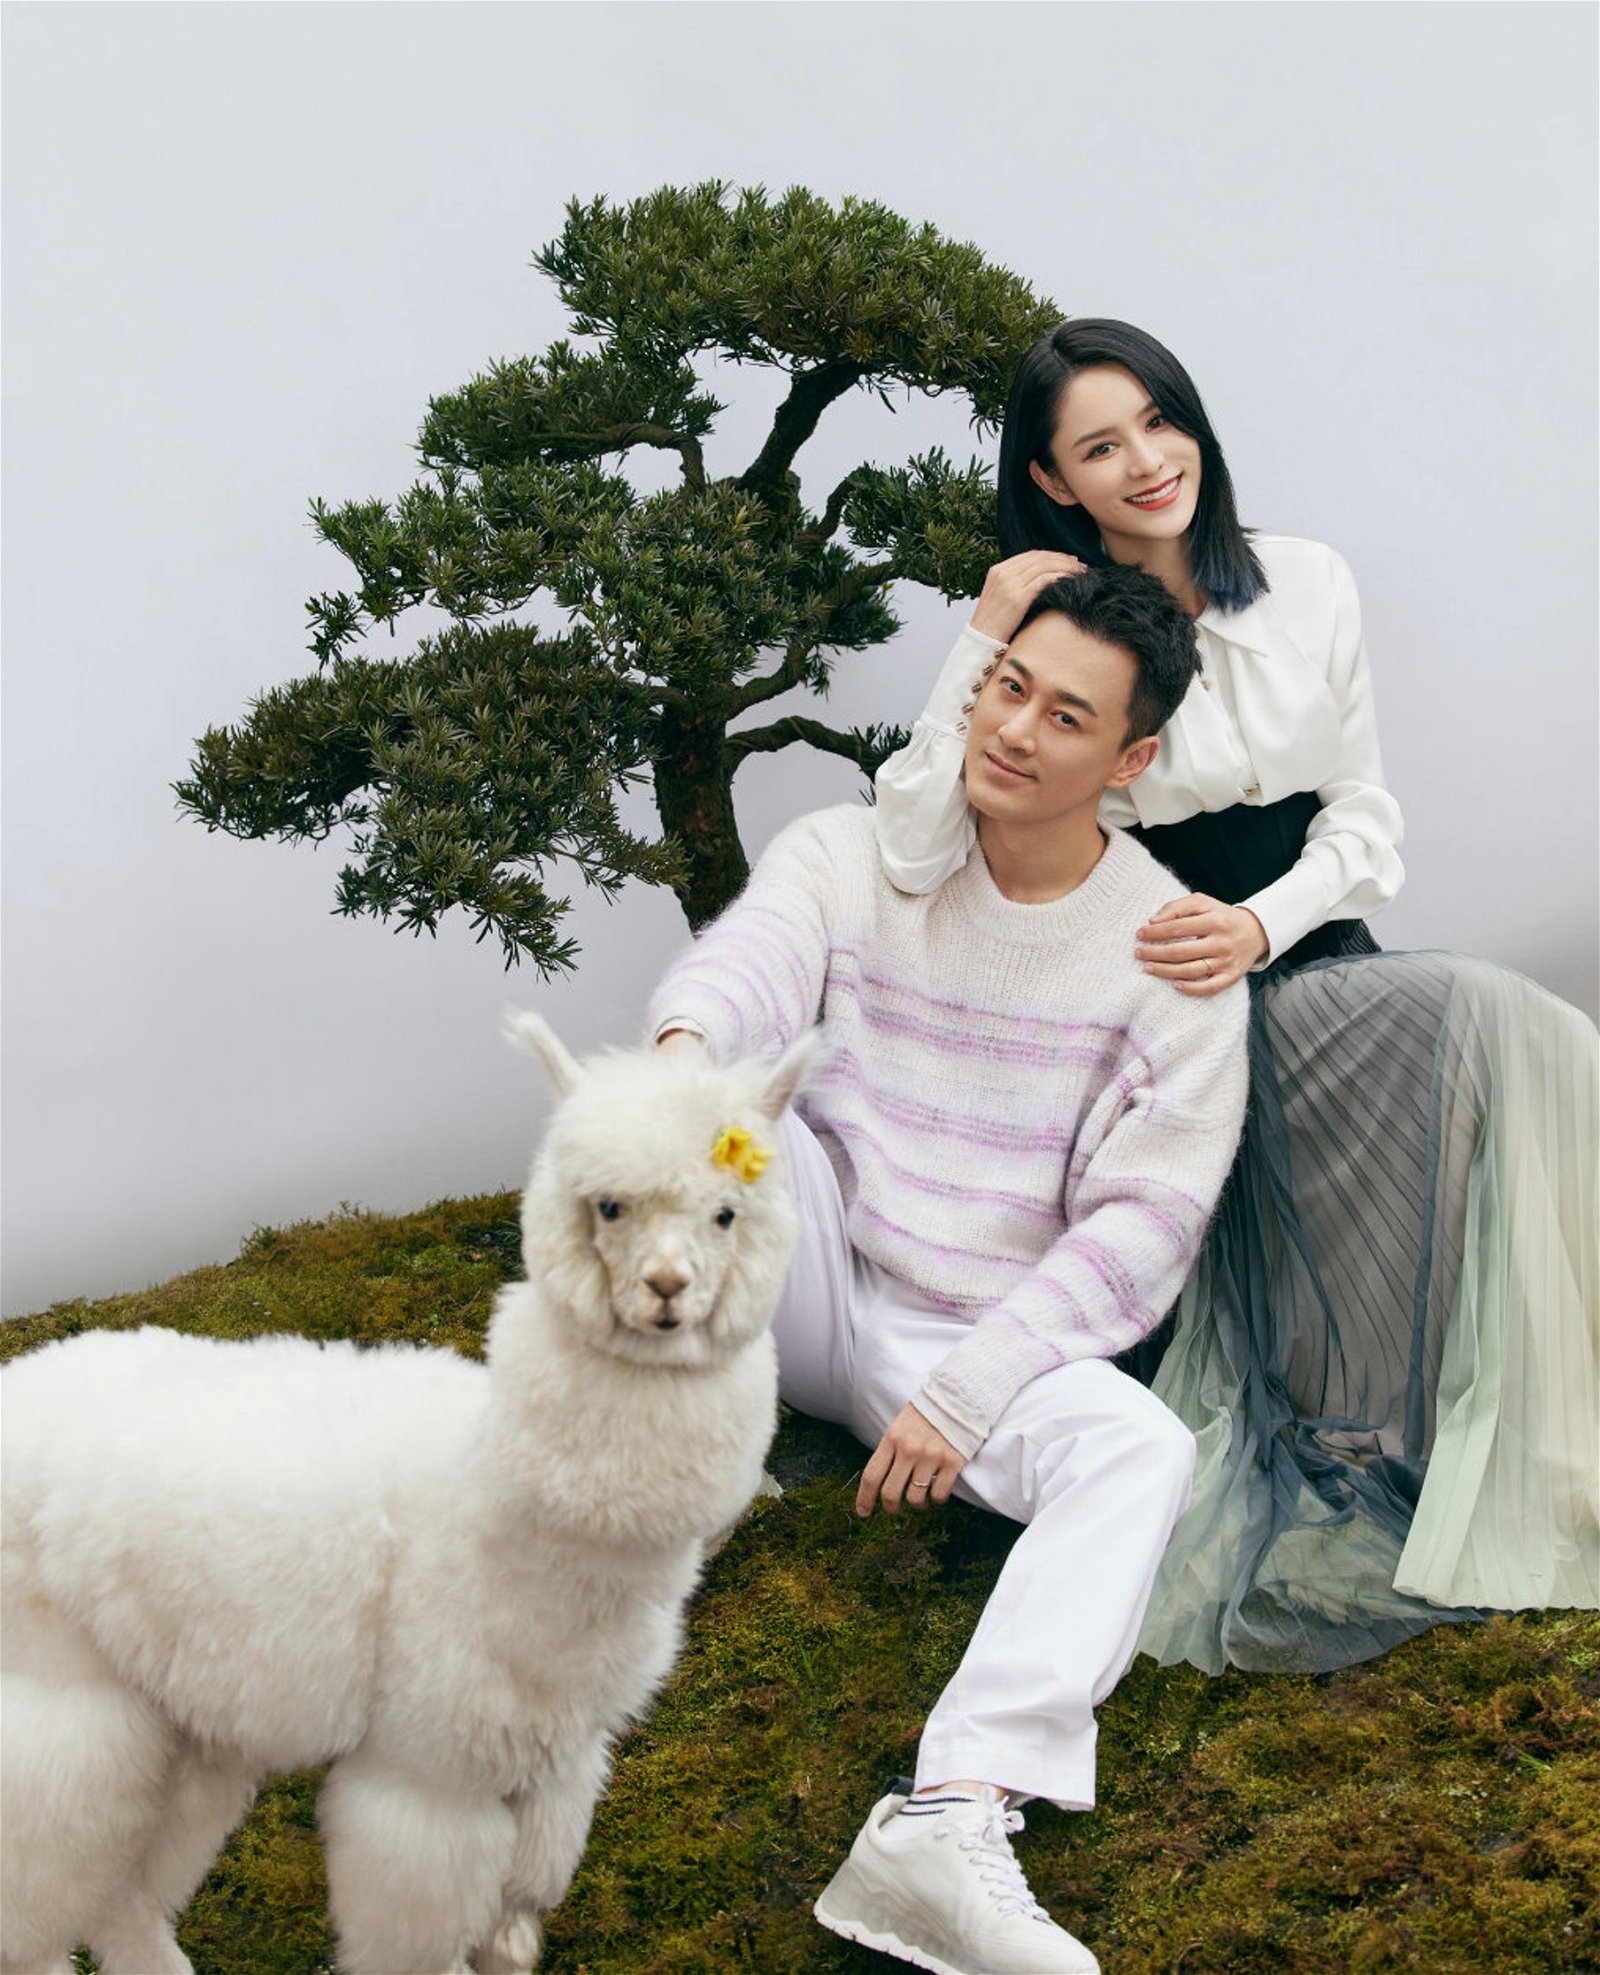 林峰透露会参加《妻子的浪漫旅行5》全因为想透过节目多了解太太张馨月。